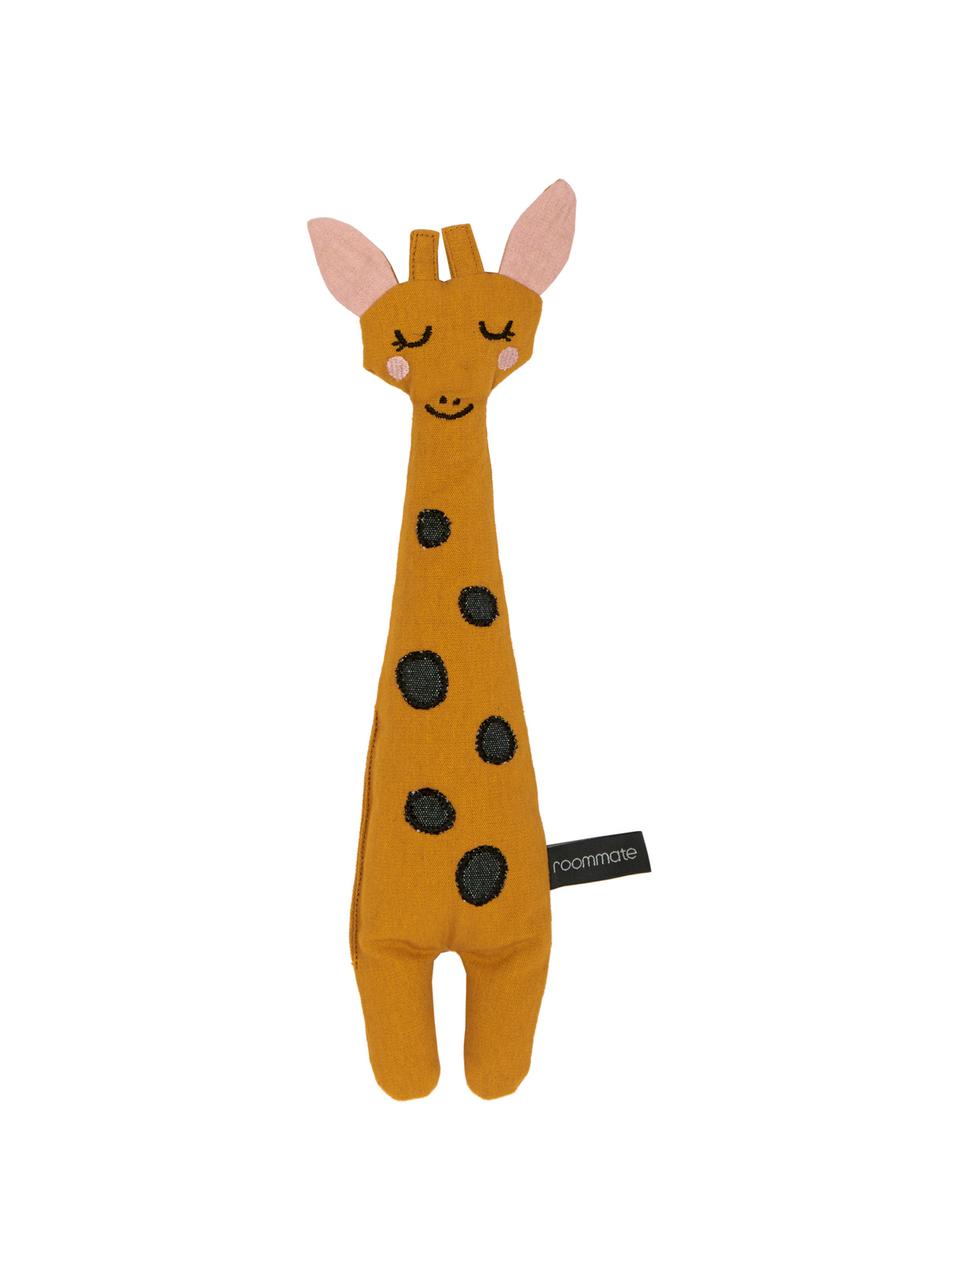 Przytulanka z bawełny Giraffe, Tapicerka: 100% bawełna, Żółty, czarny, blady różowy, S 8 x W 30 cm